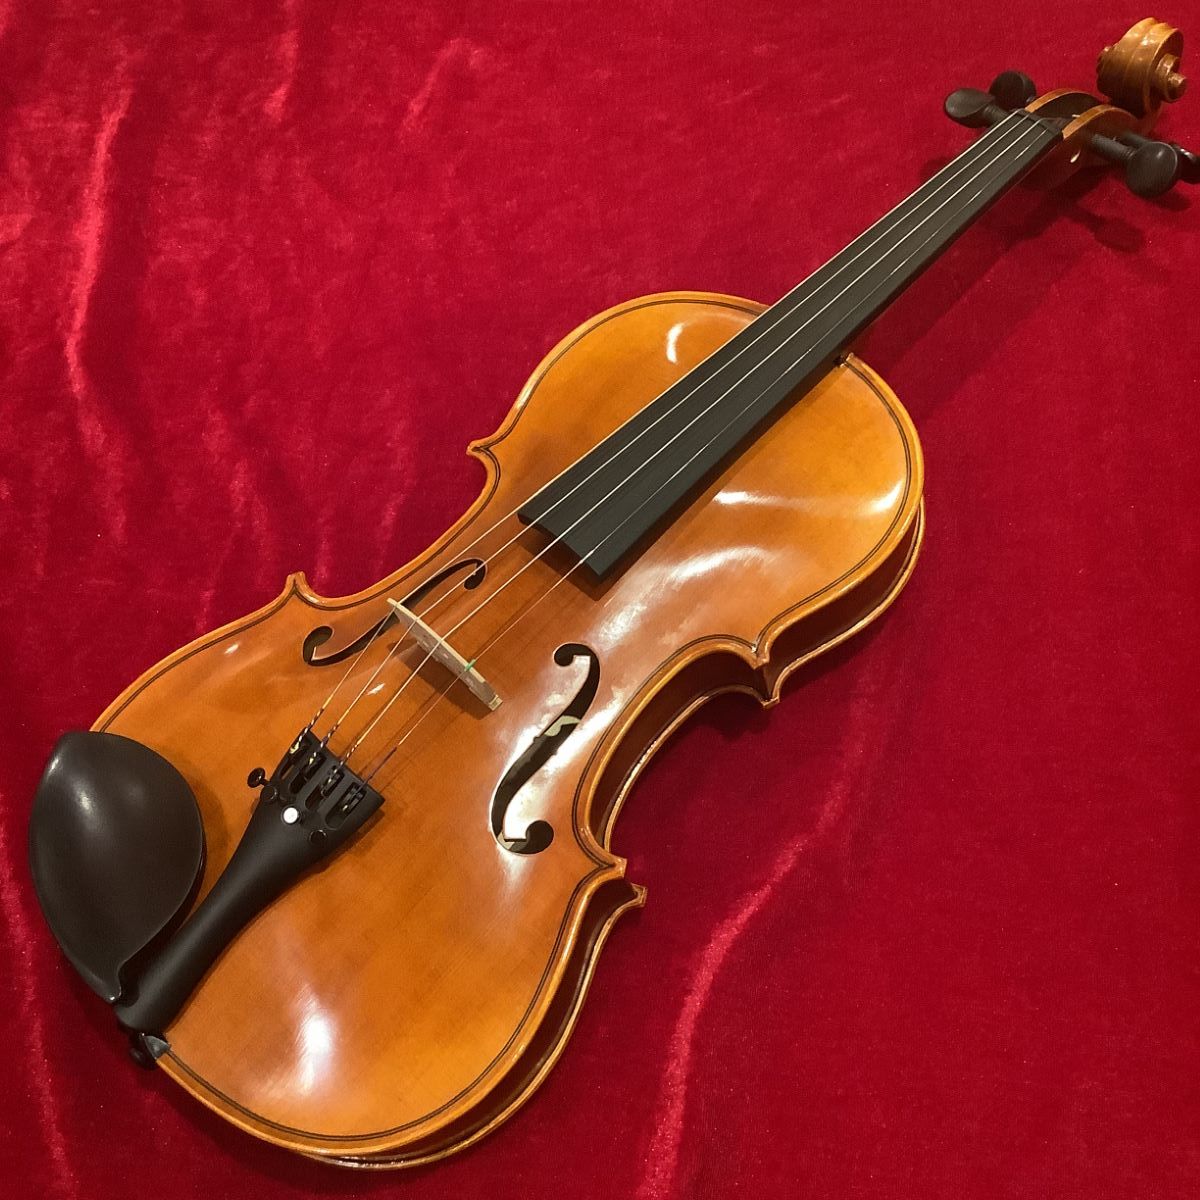 ヤマハ - V7SG_SIZE_4/4 バイオリン(4/4サイズ) YAMAHA Braviol